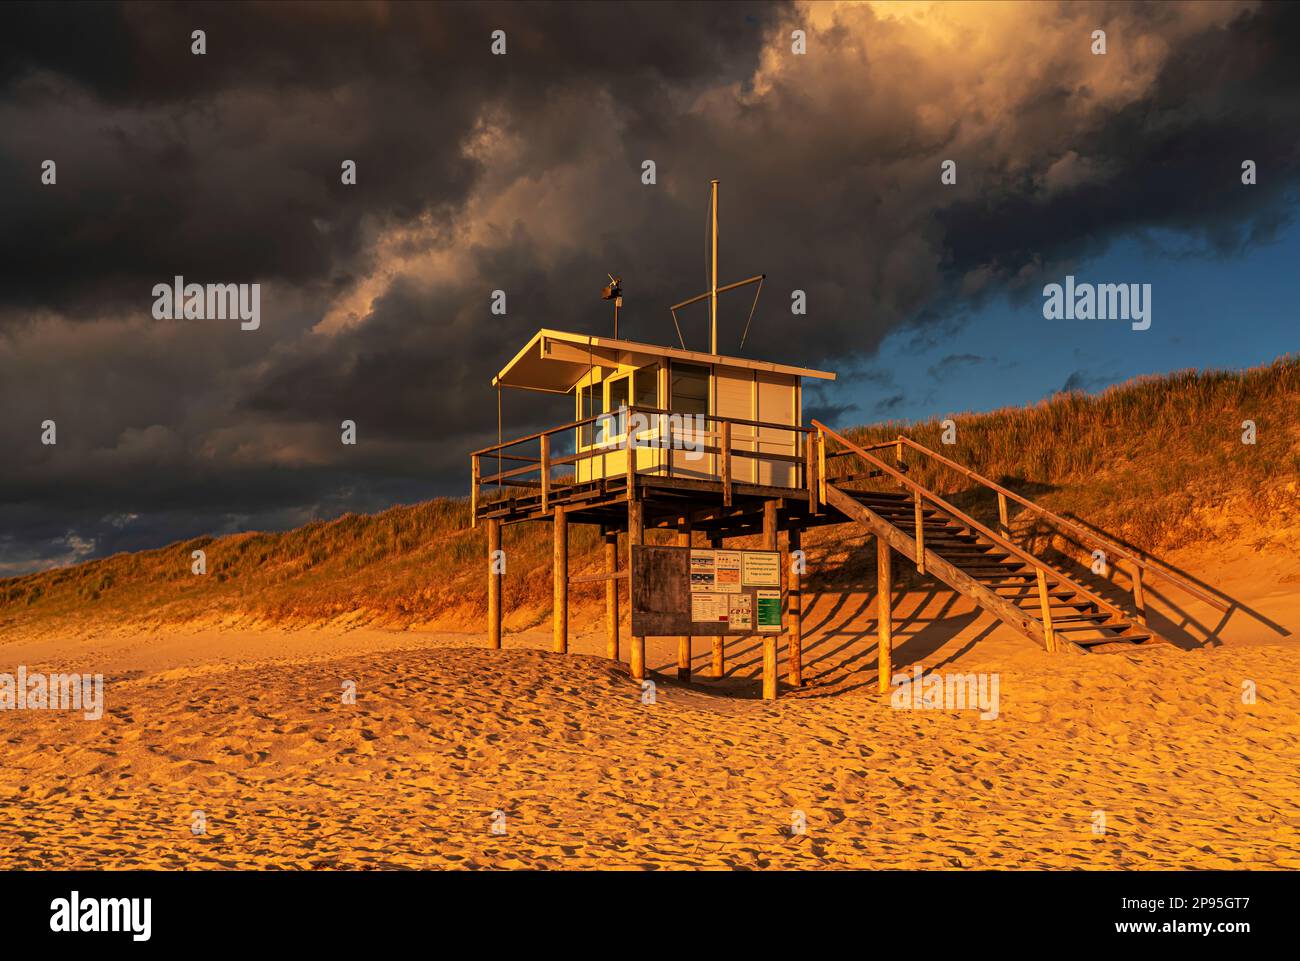 Estación de rescate en la playa de Rantum, isla Sylt Foto de stock